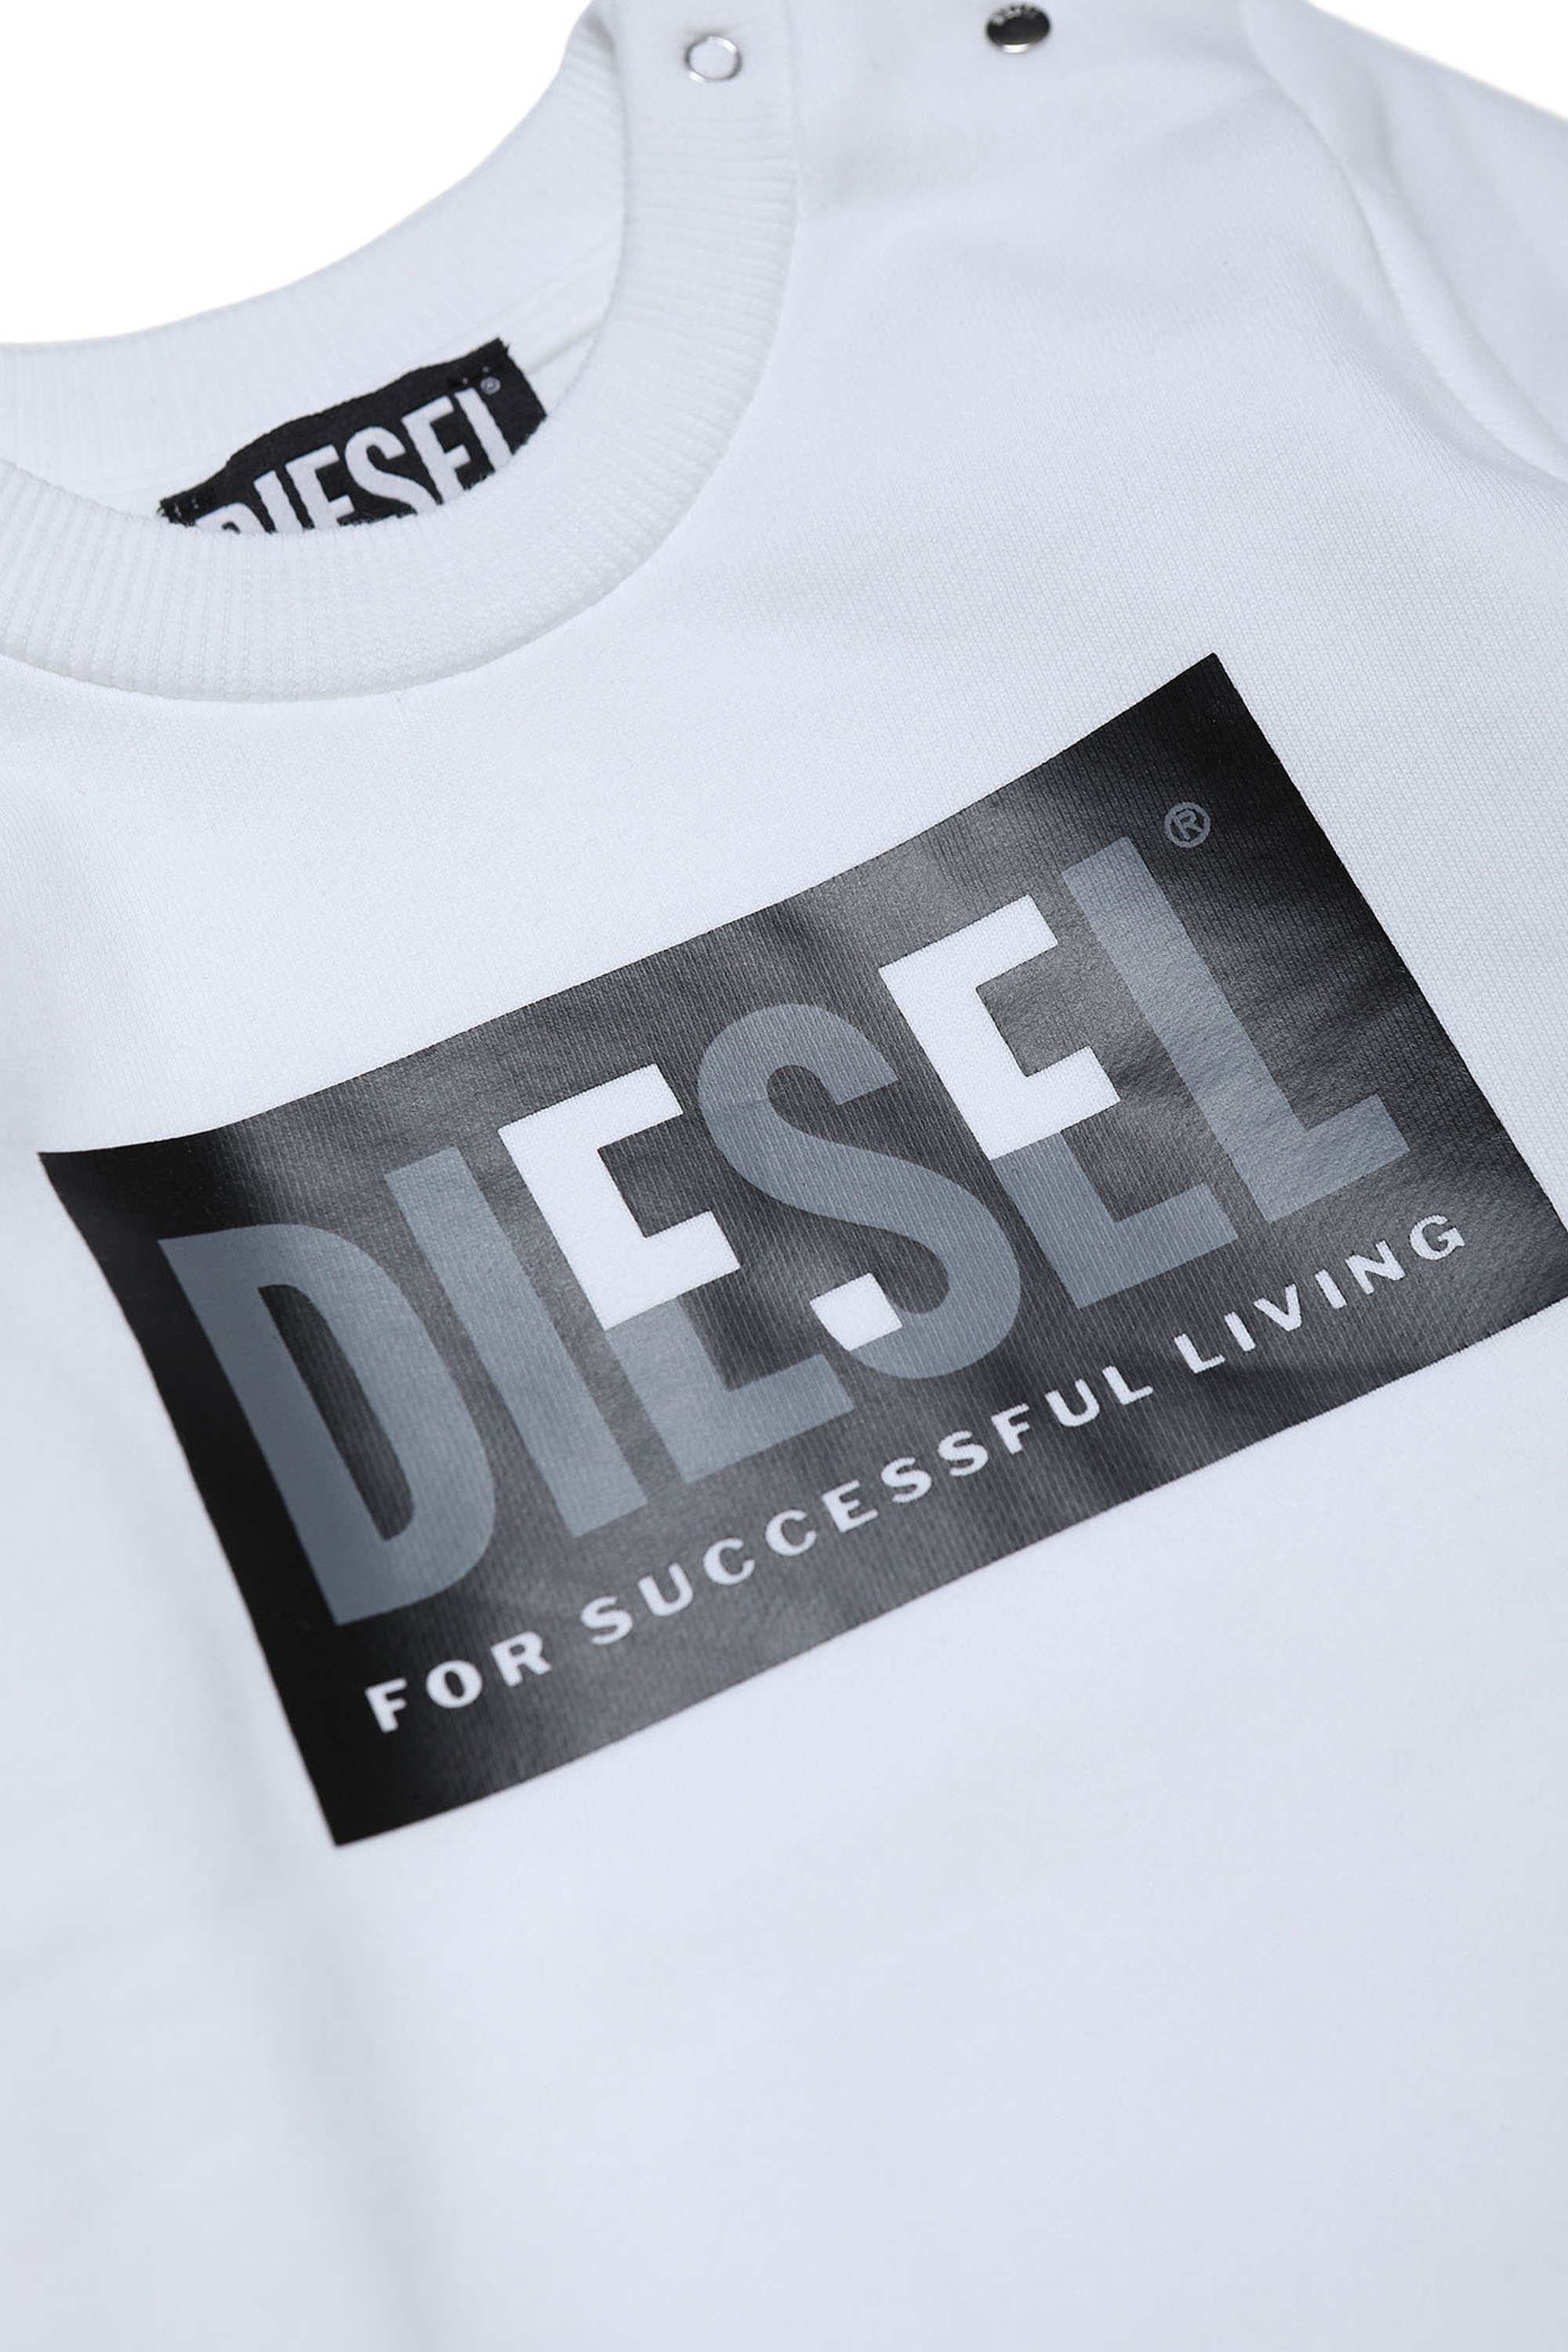 Diesel - SCREWMILEYB, Blanc - Image 3